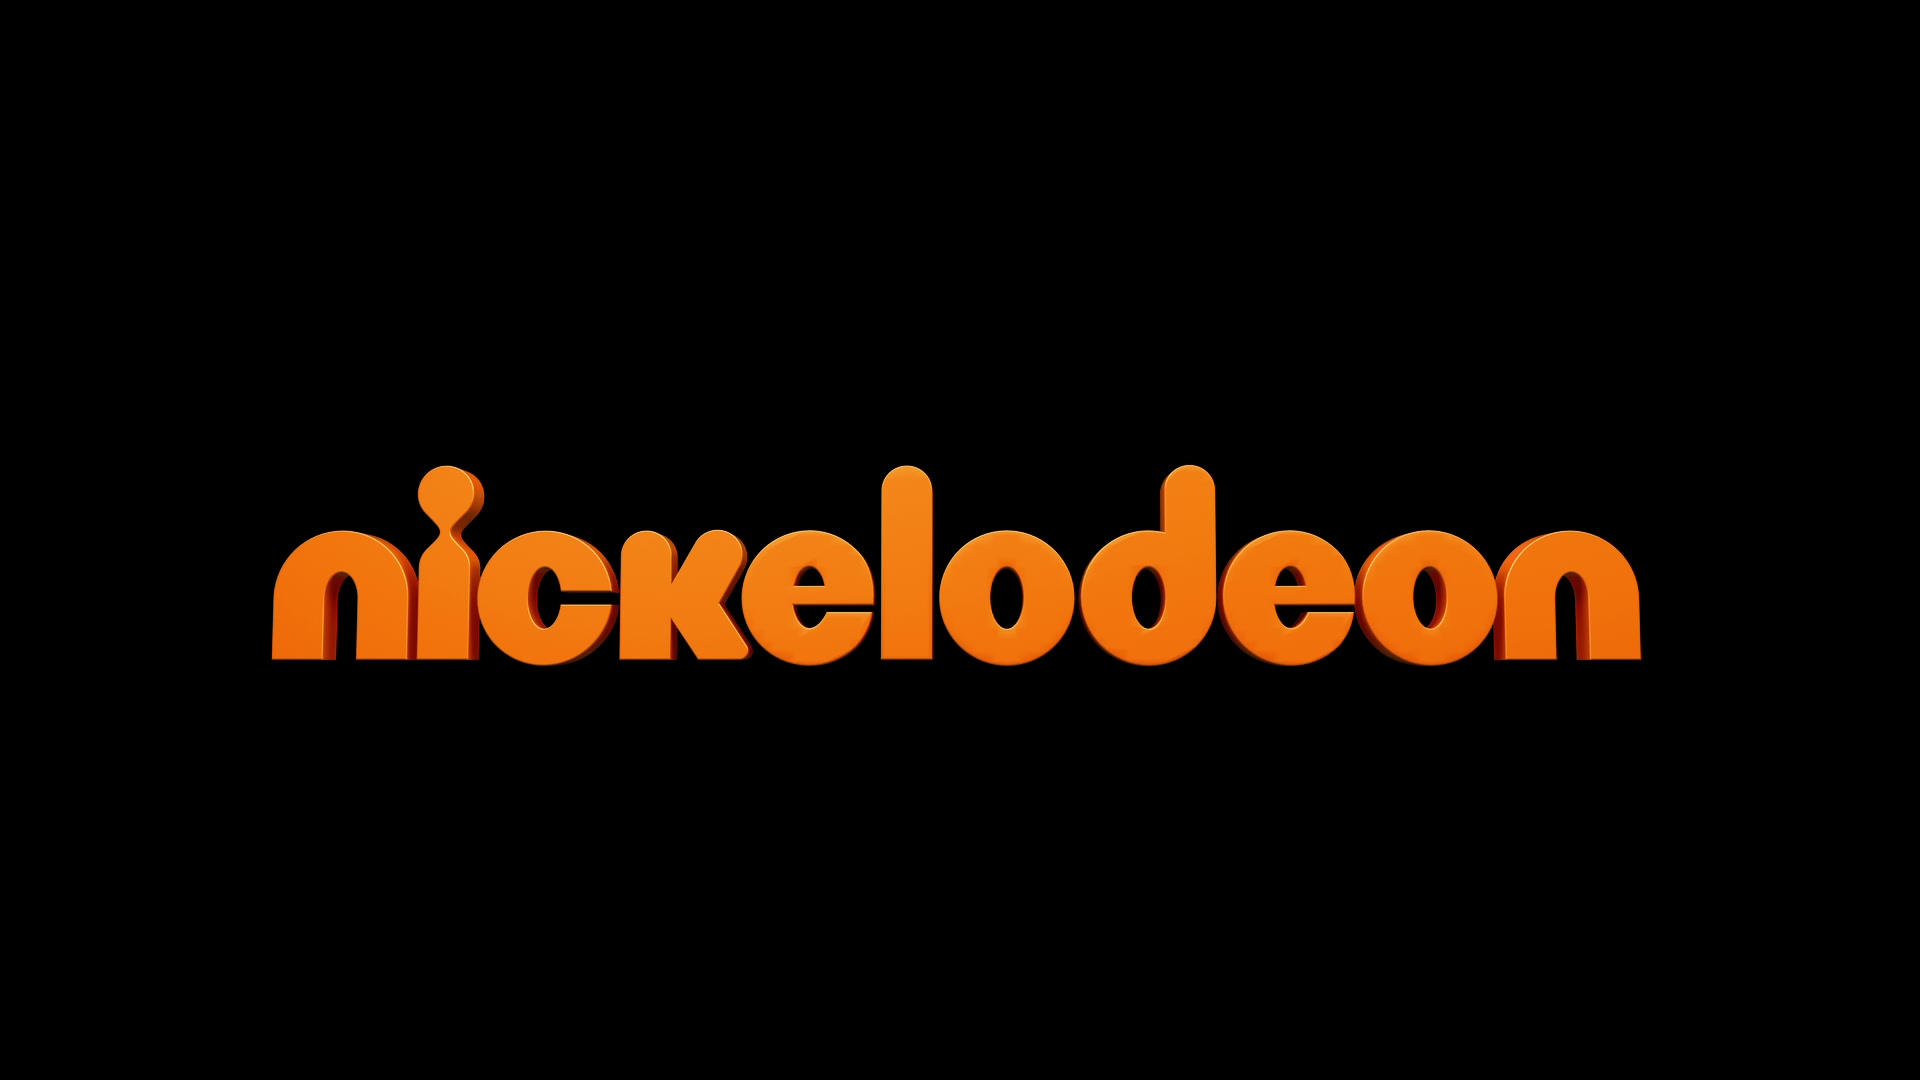 Nick channel. Nickelodeon. Телеканал Nickelodeon. Логотип канала Никелодеон. Канал Nickelodeon картинки.